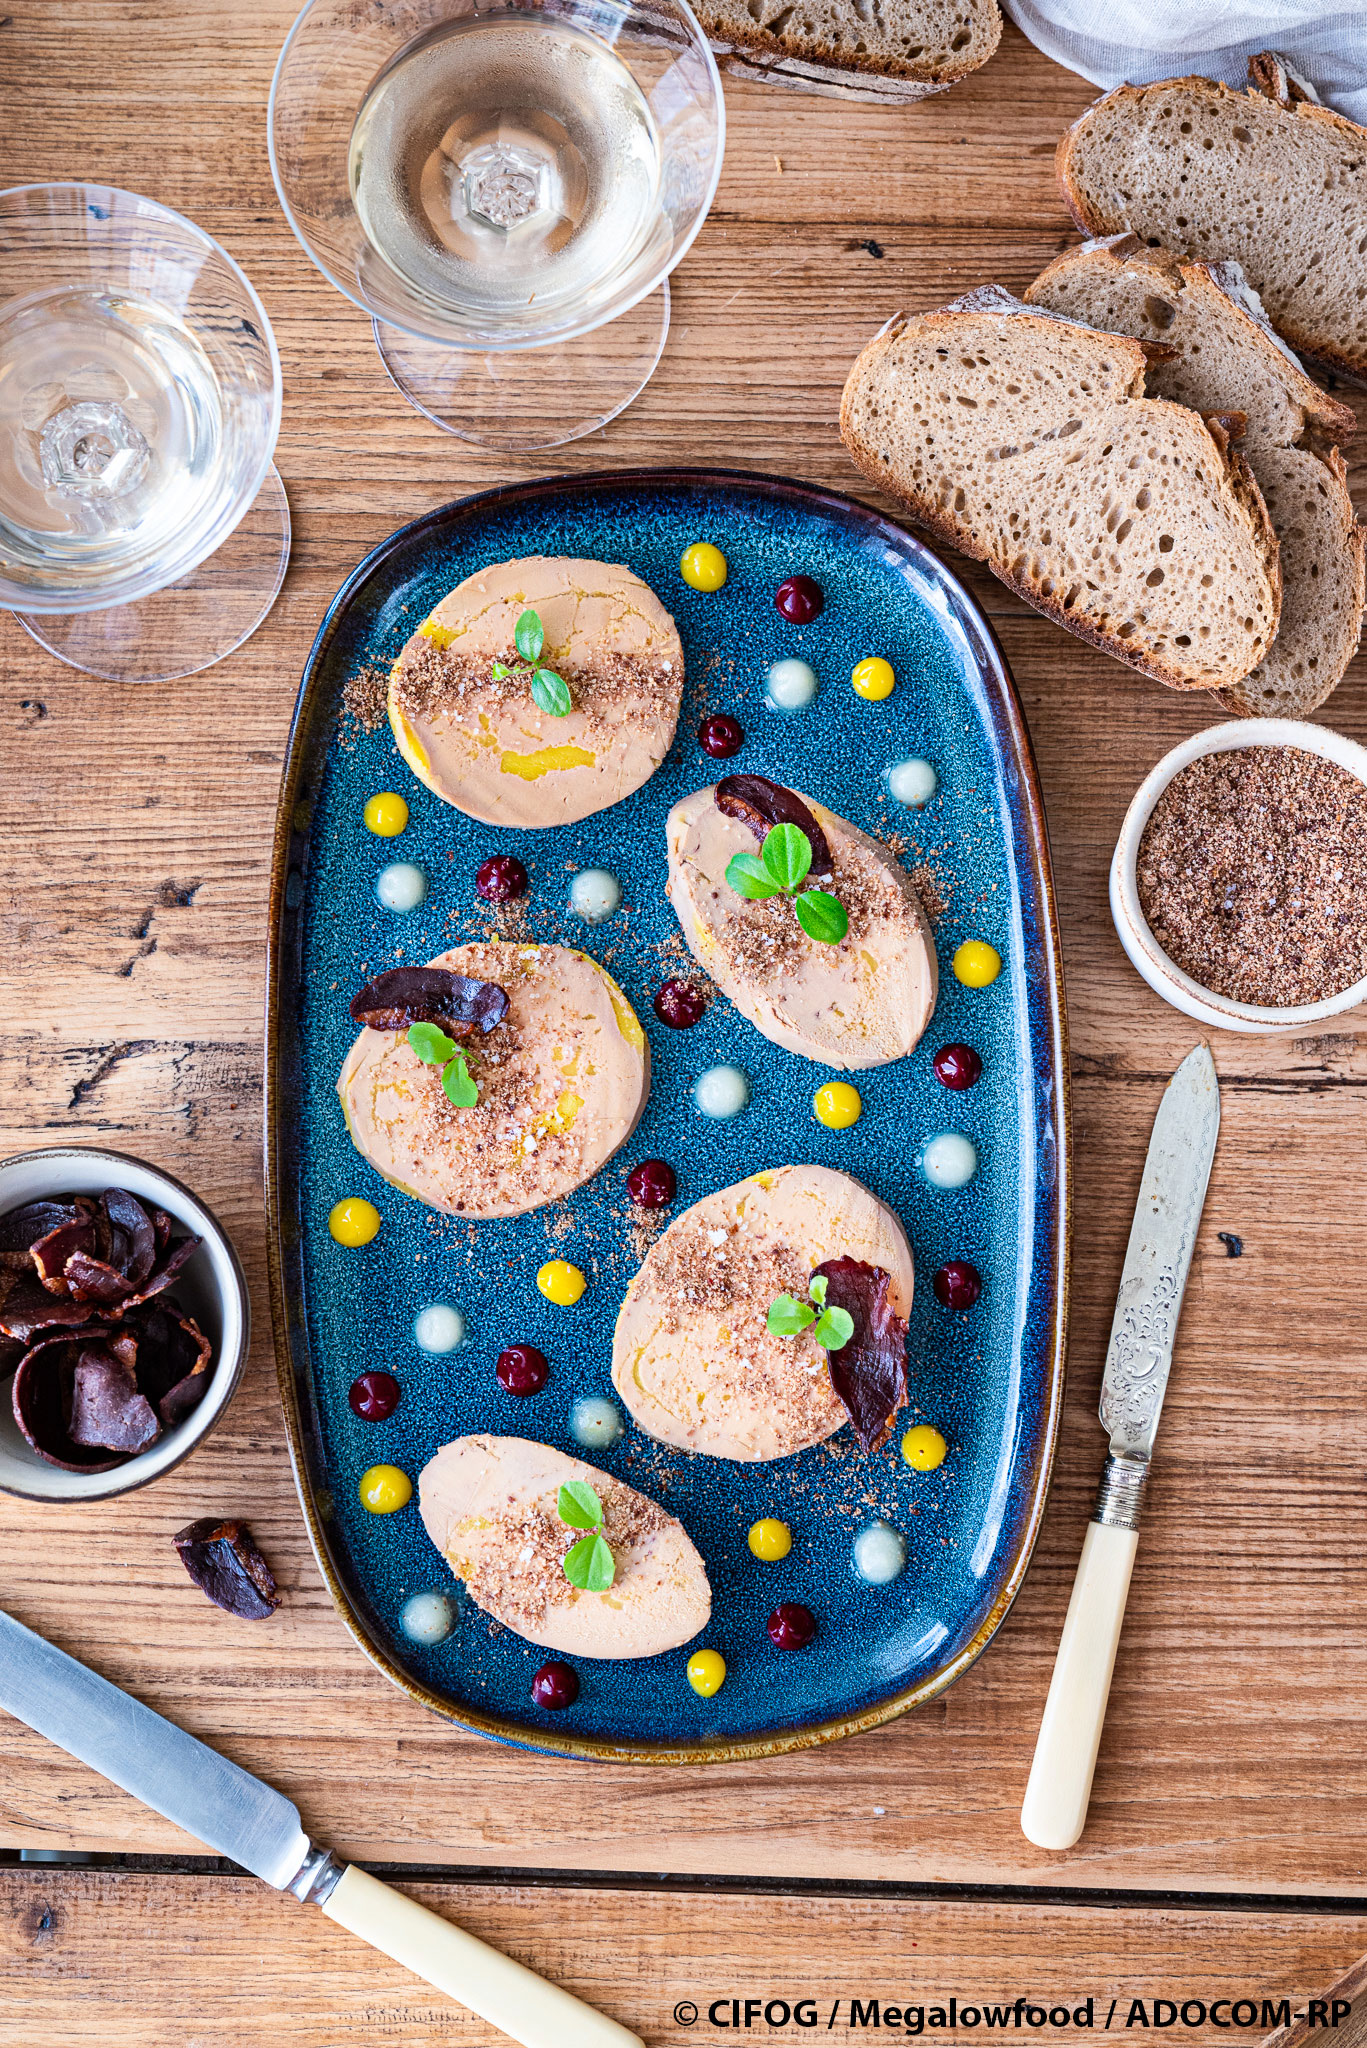 Board-foie-gras-WEB-©CIFOG_megalowfood_ADOCOMRP